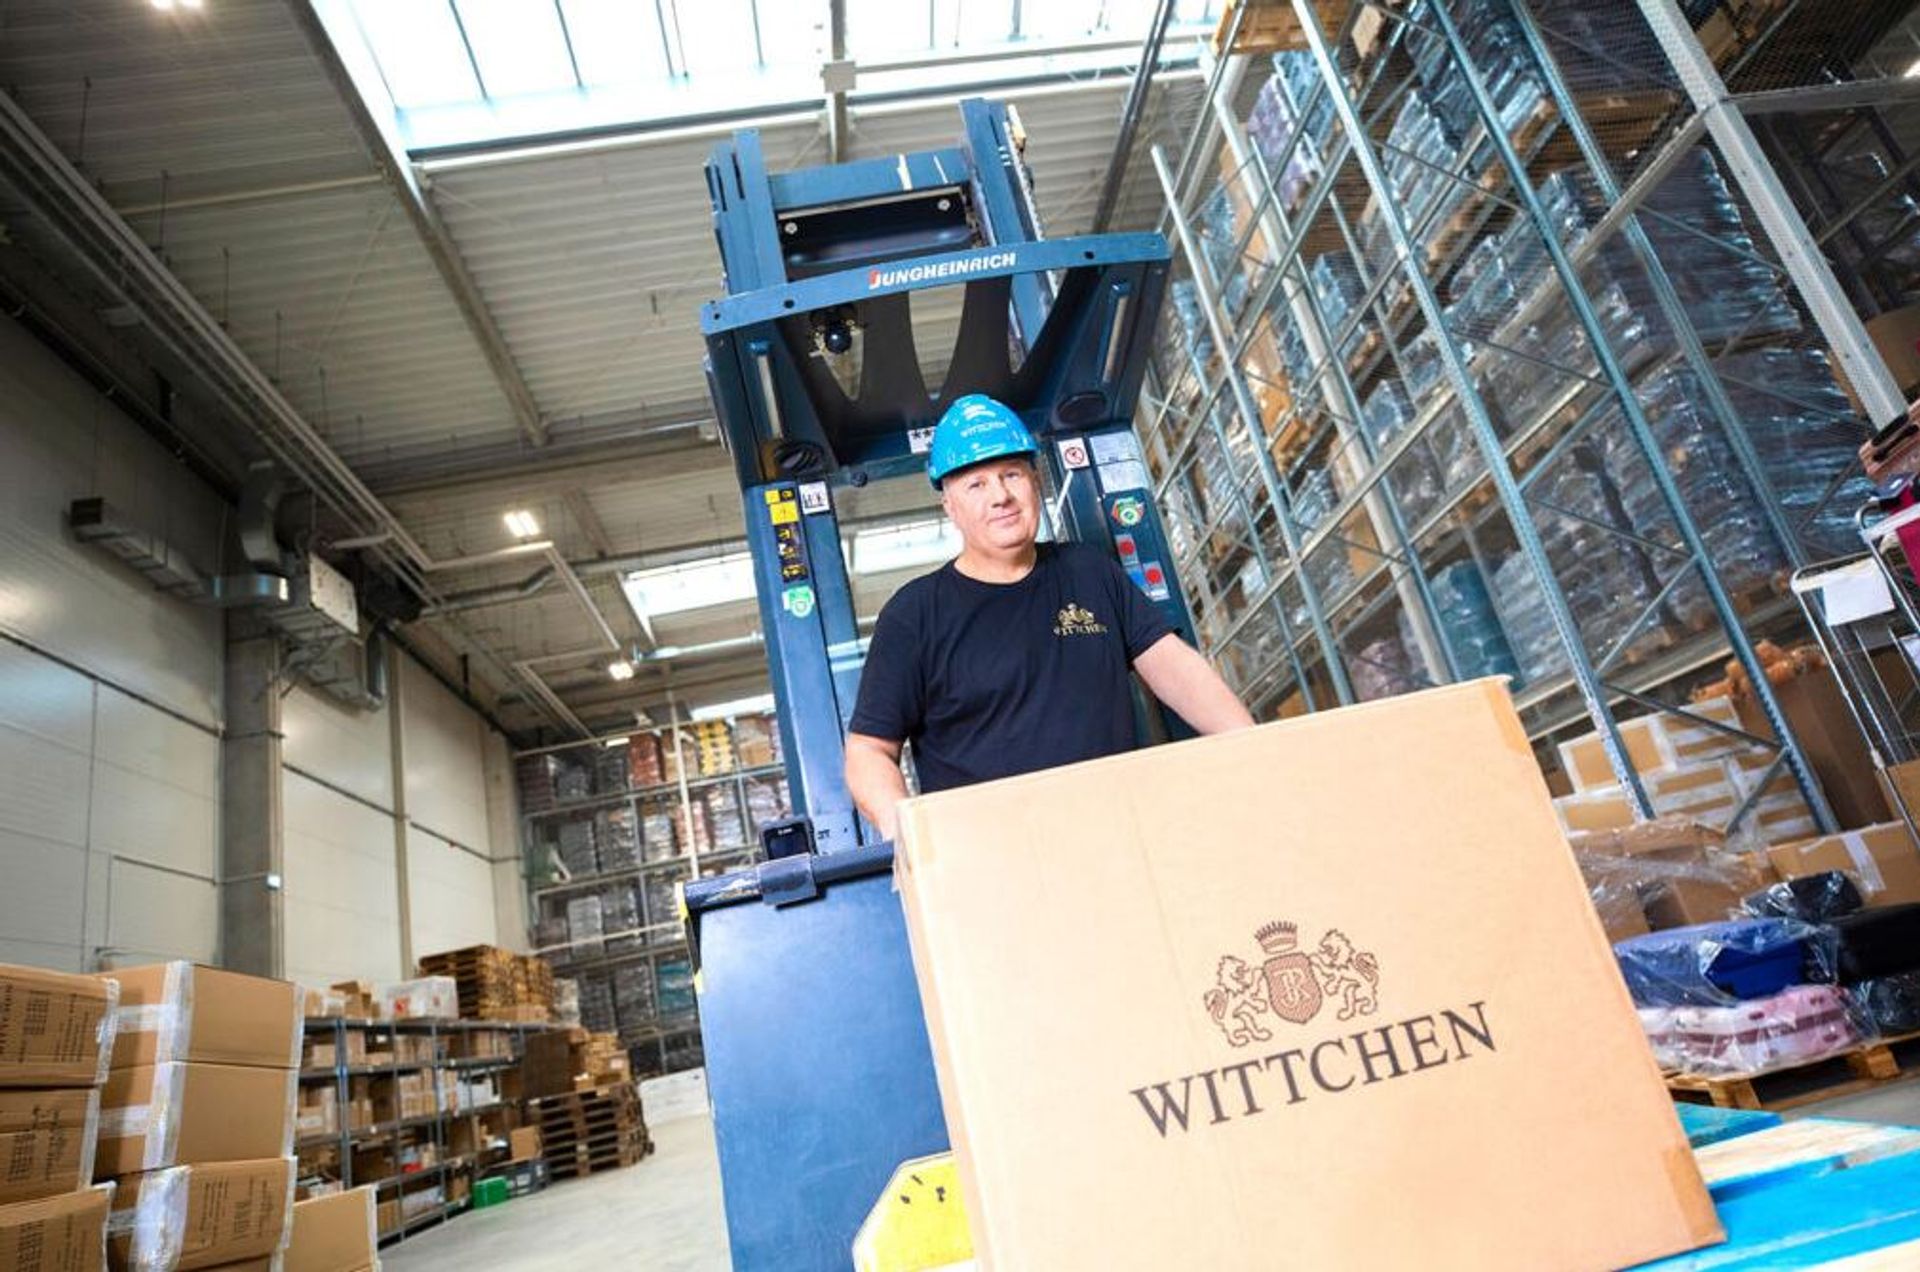 Znana polska firma Wittchen zrealizuje kolejną inwestycję pod Warszawą